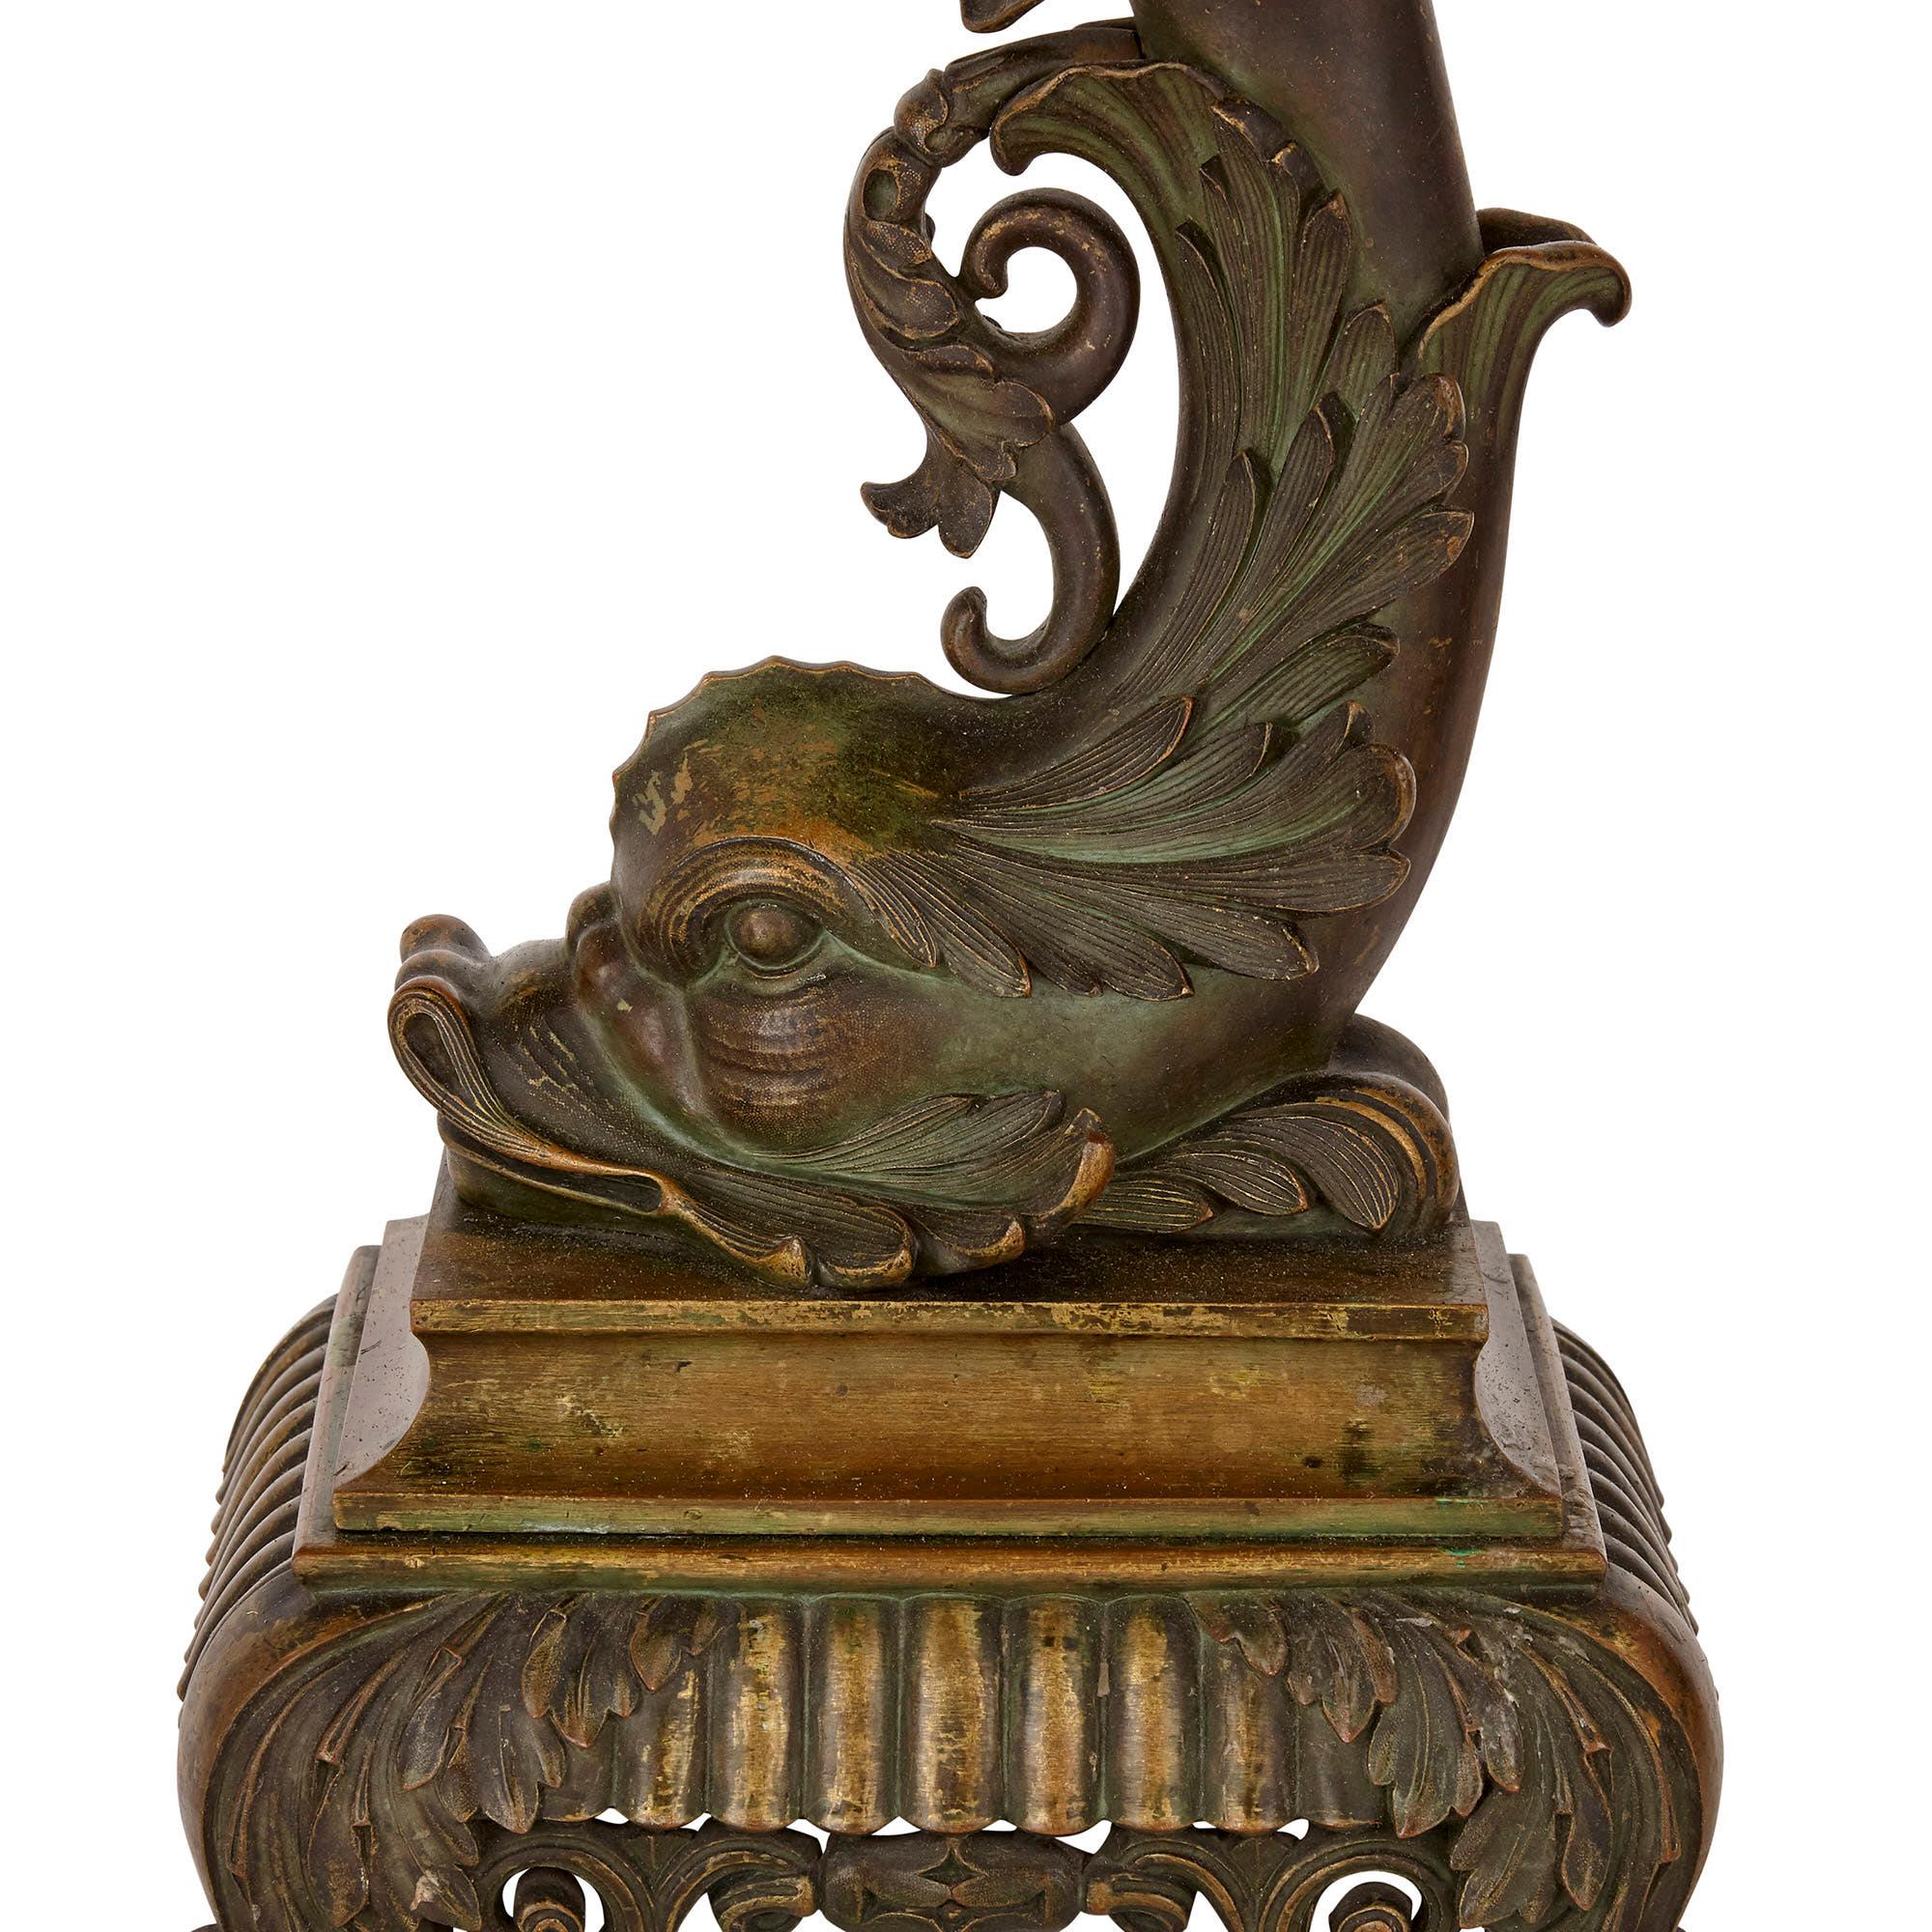 Diese Kandelaber repräsentieren das französische Design des 19. Jahrhunderts in seiner verspieltesten und originellsten Form. Sie sind aus vergoldeter Bronze in Form von stark stilisierten Delphinen modelliert. Die Kandelaber haben jeweils sieben